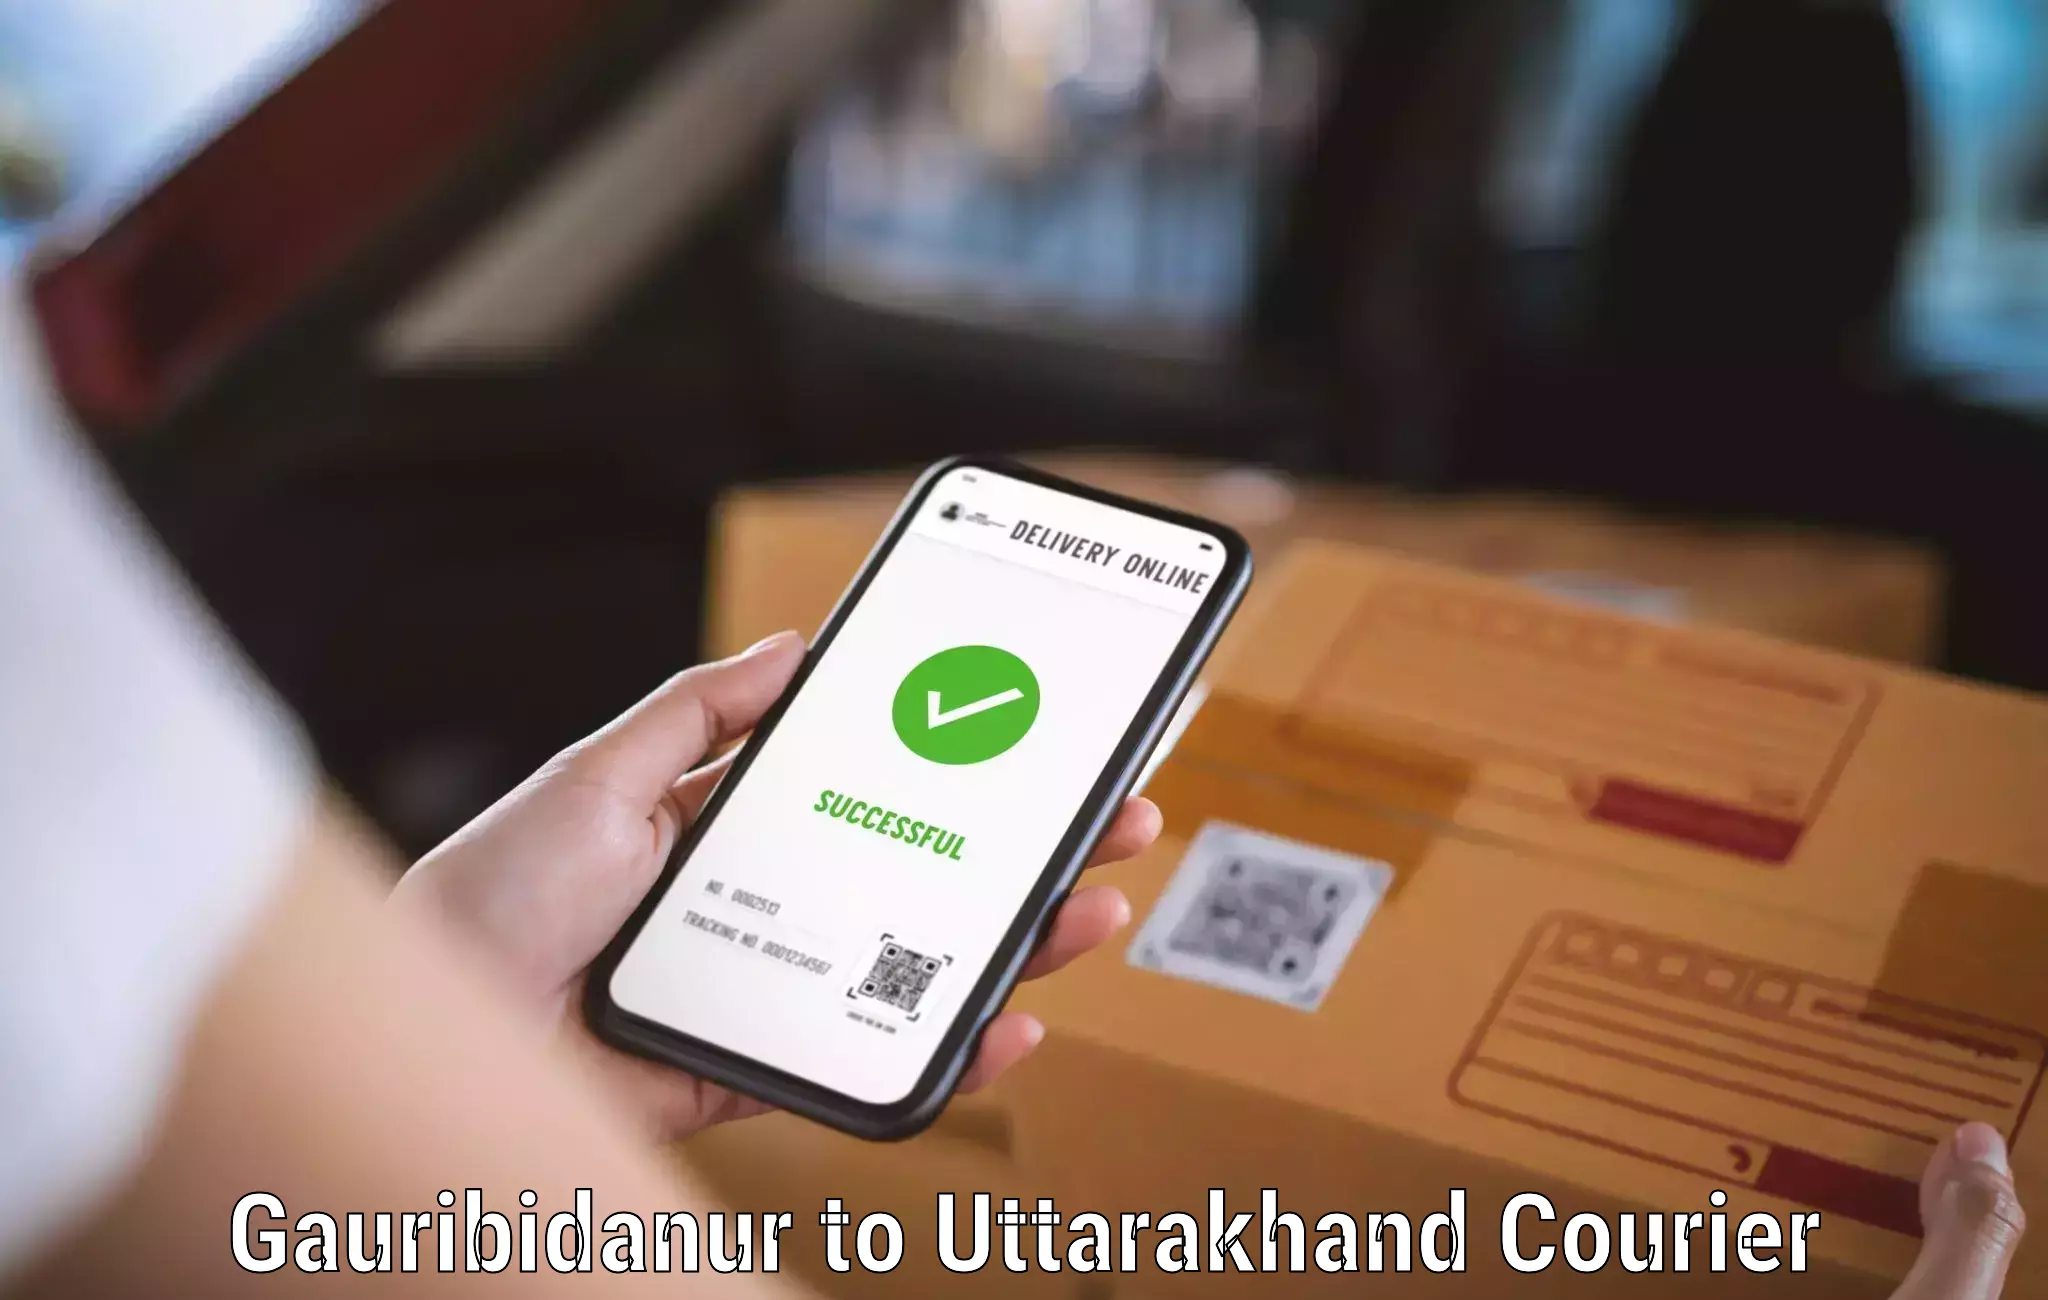 High-speed parcel service Gauribidanur to Pithoragarh